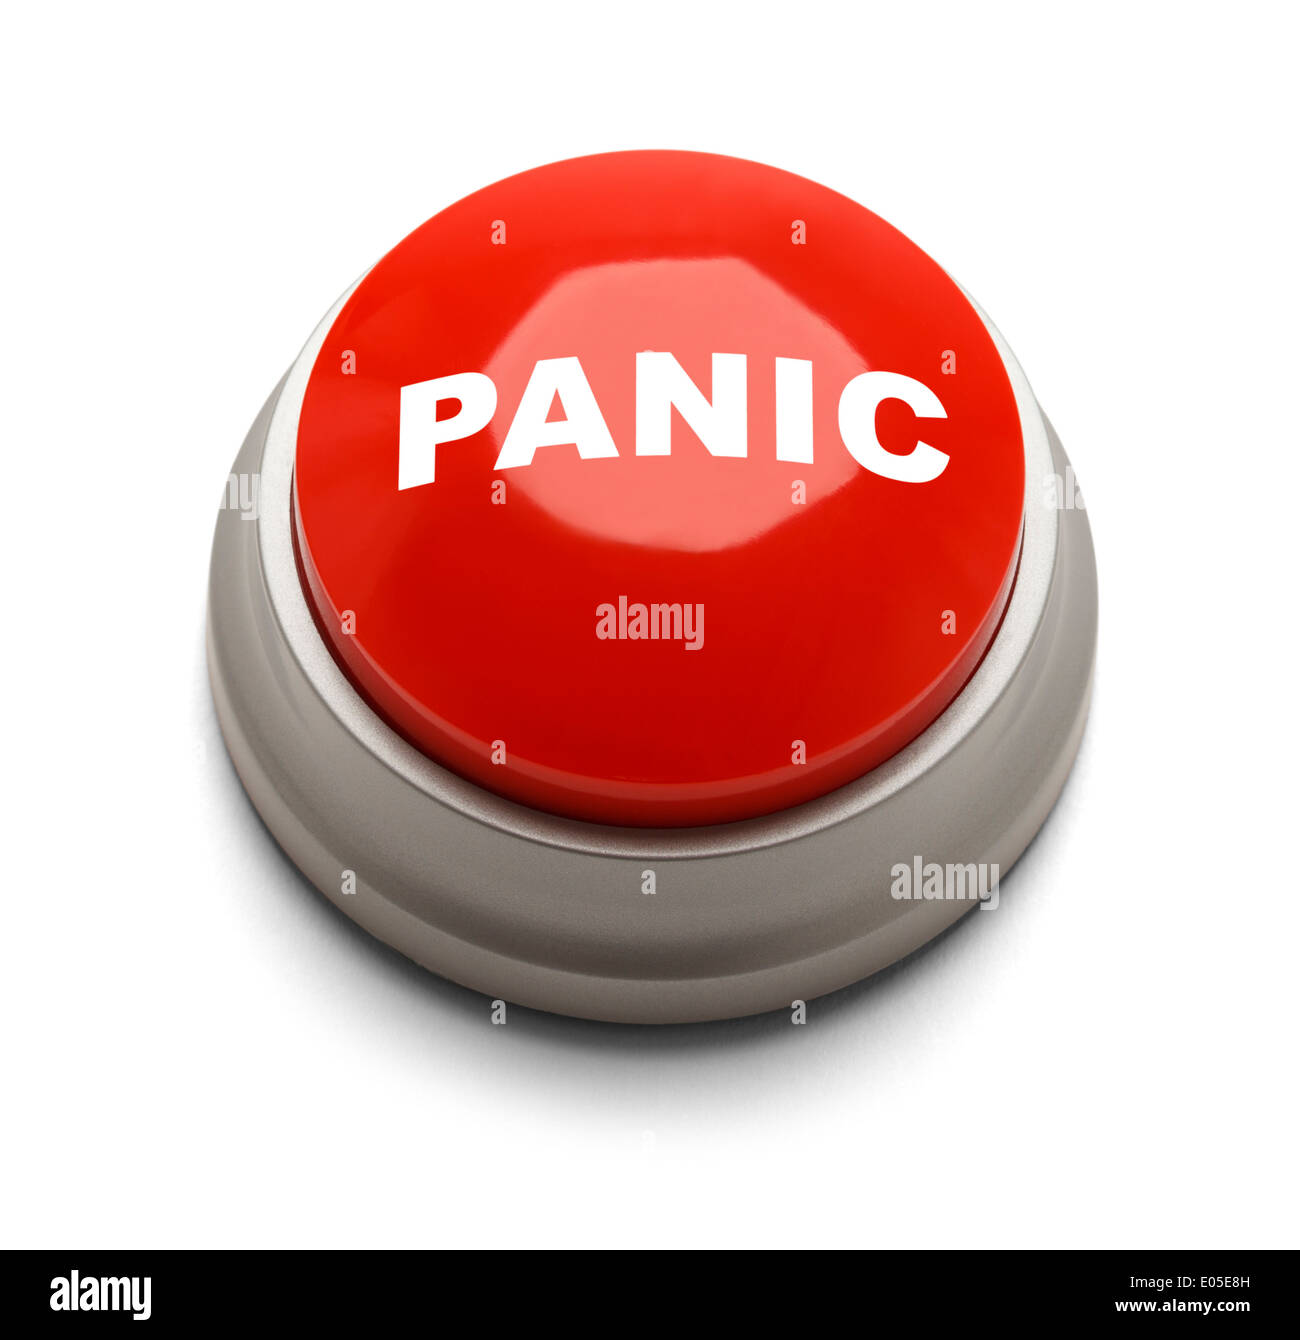 Botón redondo rojo con pánico impresas aislado sobre un fondo blanco. Foto de stock